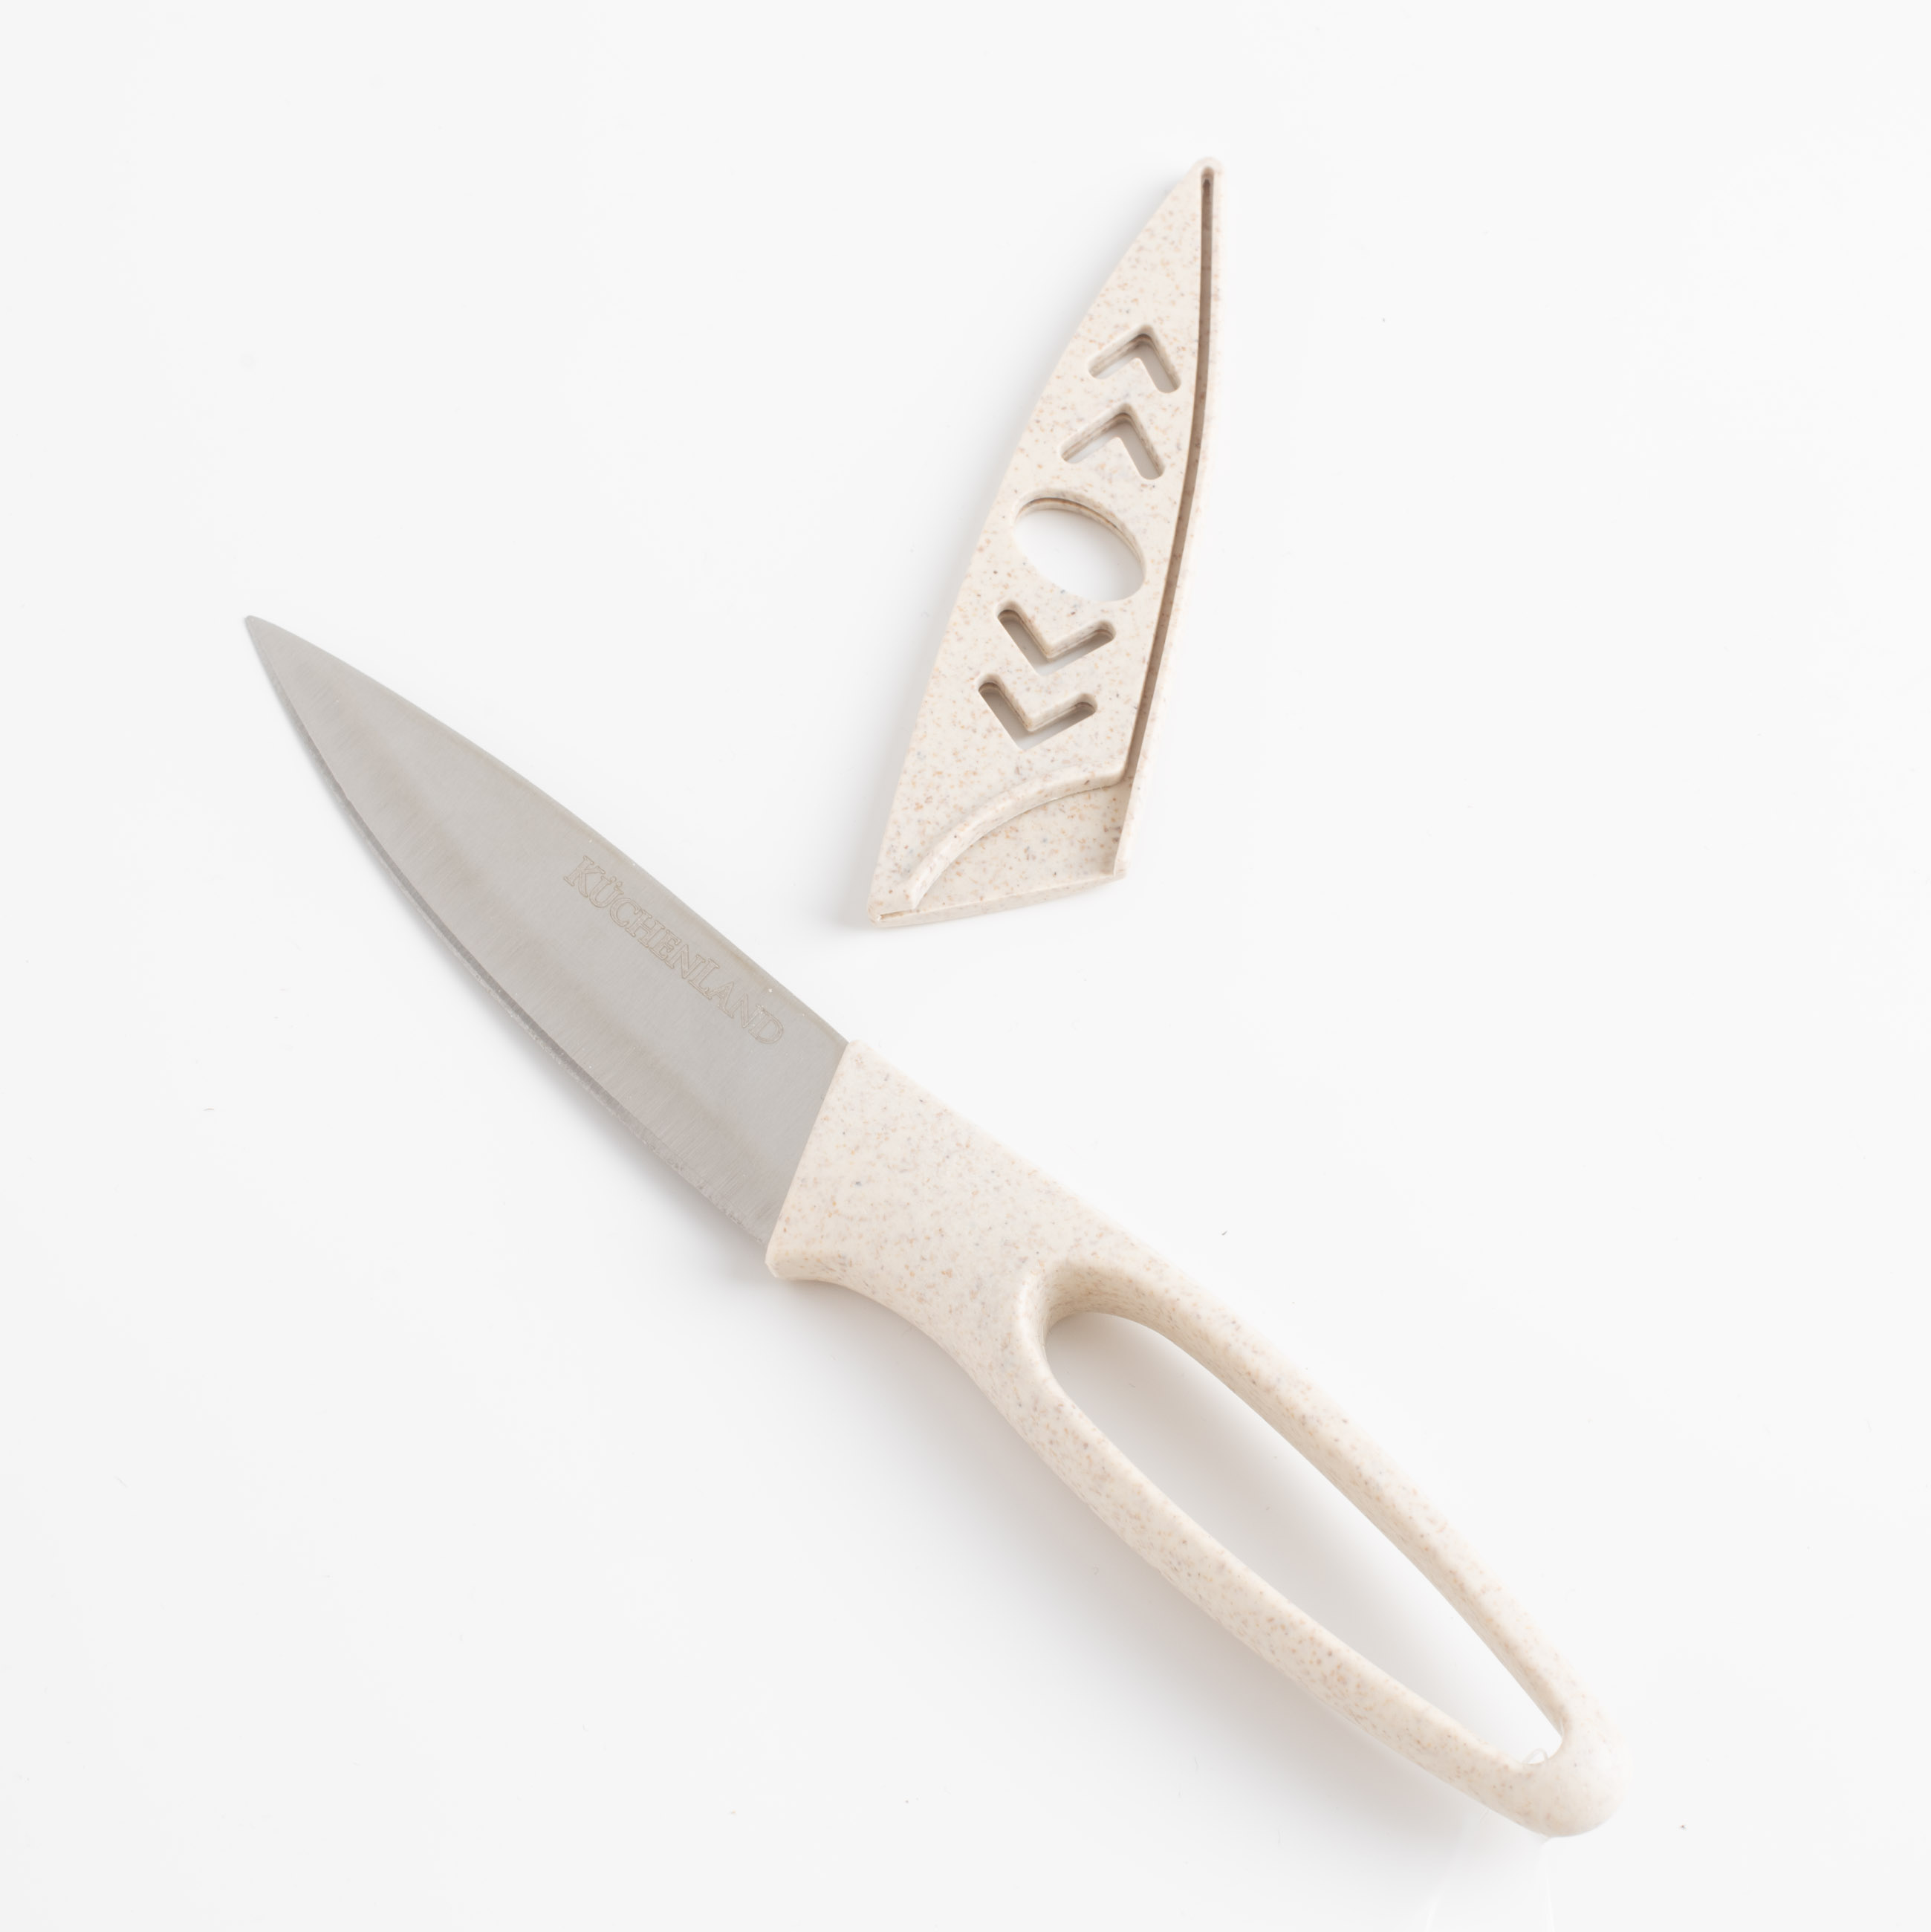 Нож для чистки овощей, 9 см, с чехлом, сталь/пластик, бежевый, в крапинку, Soft speckled изображение № 2